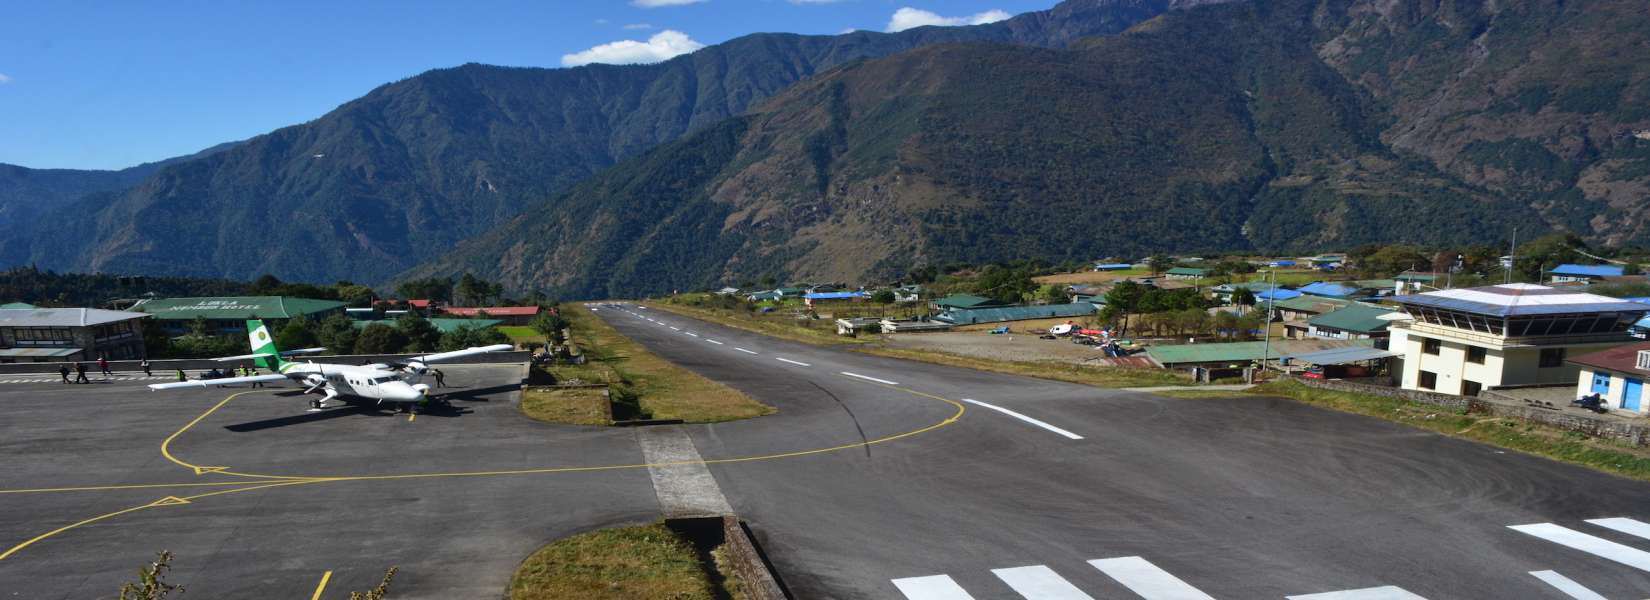 Lukla Airport in Nepal | Tenzing Hillary Airport